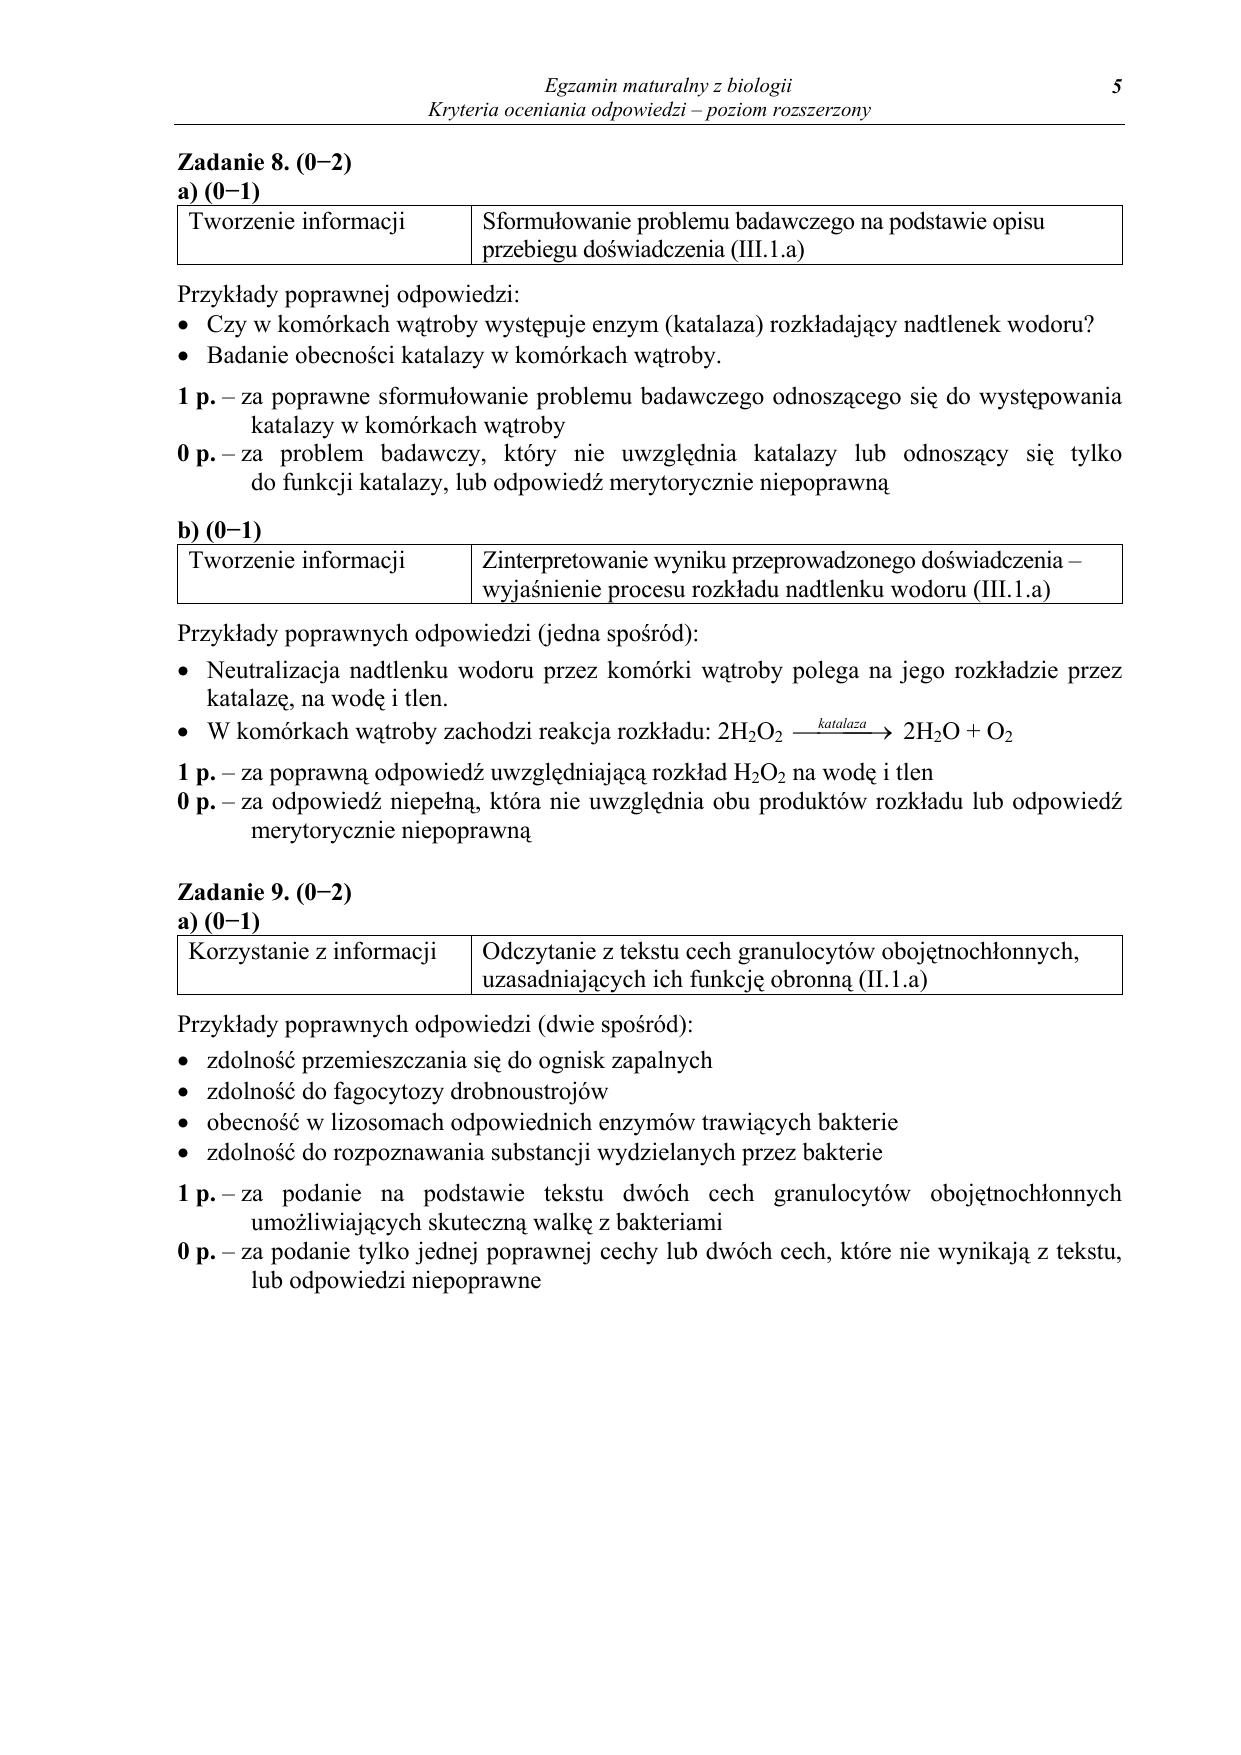 odpowiedzi-biologia-poziom-rozszerzony-matura-2012-05